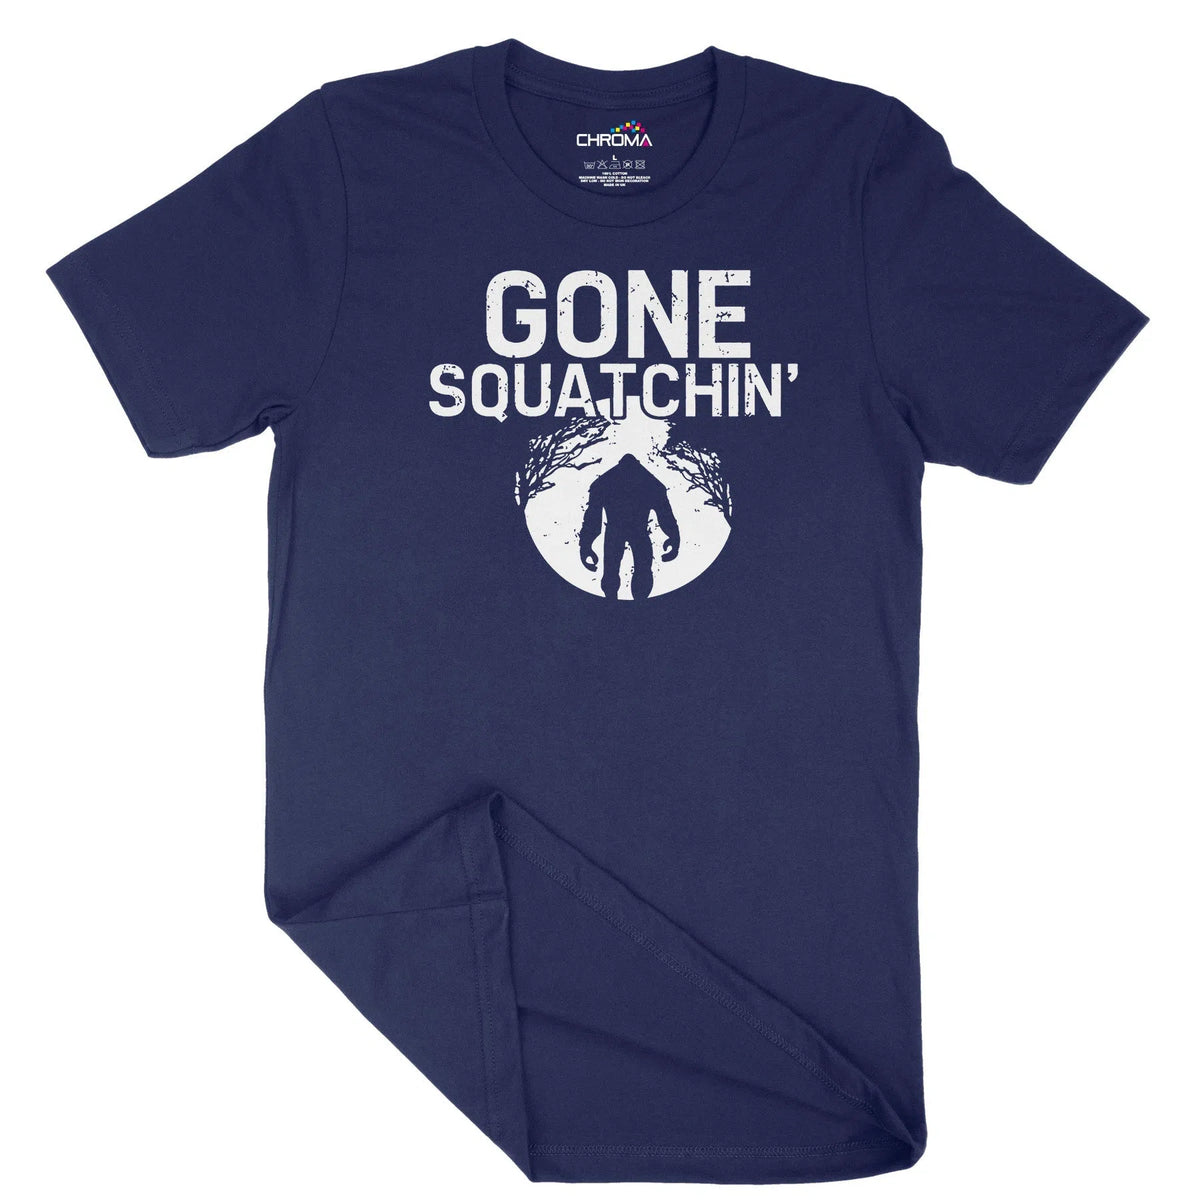 Gone Squatchin' Unisex Adult T-Shirt | Quality Slogan Clothing Chroma Clothing